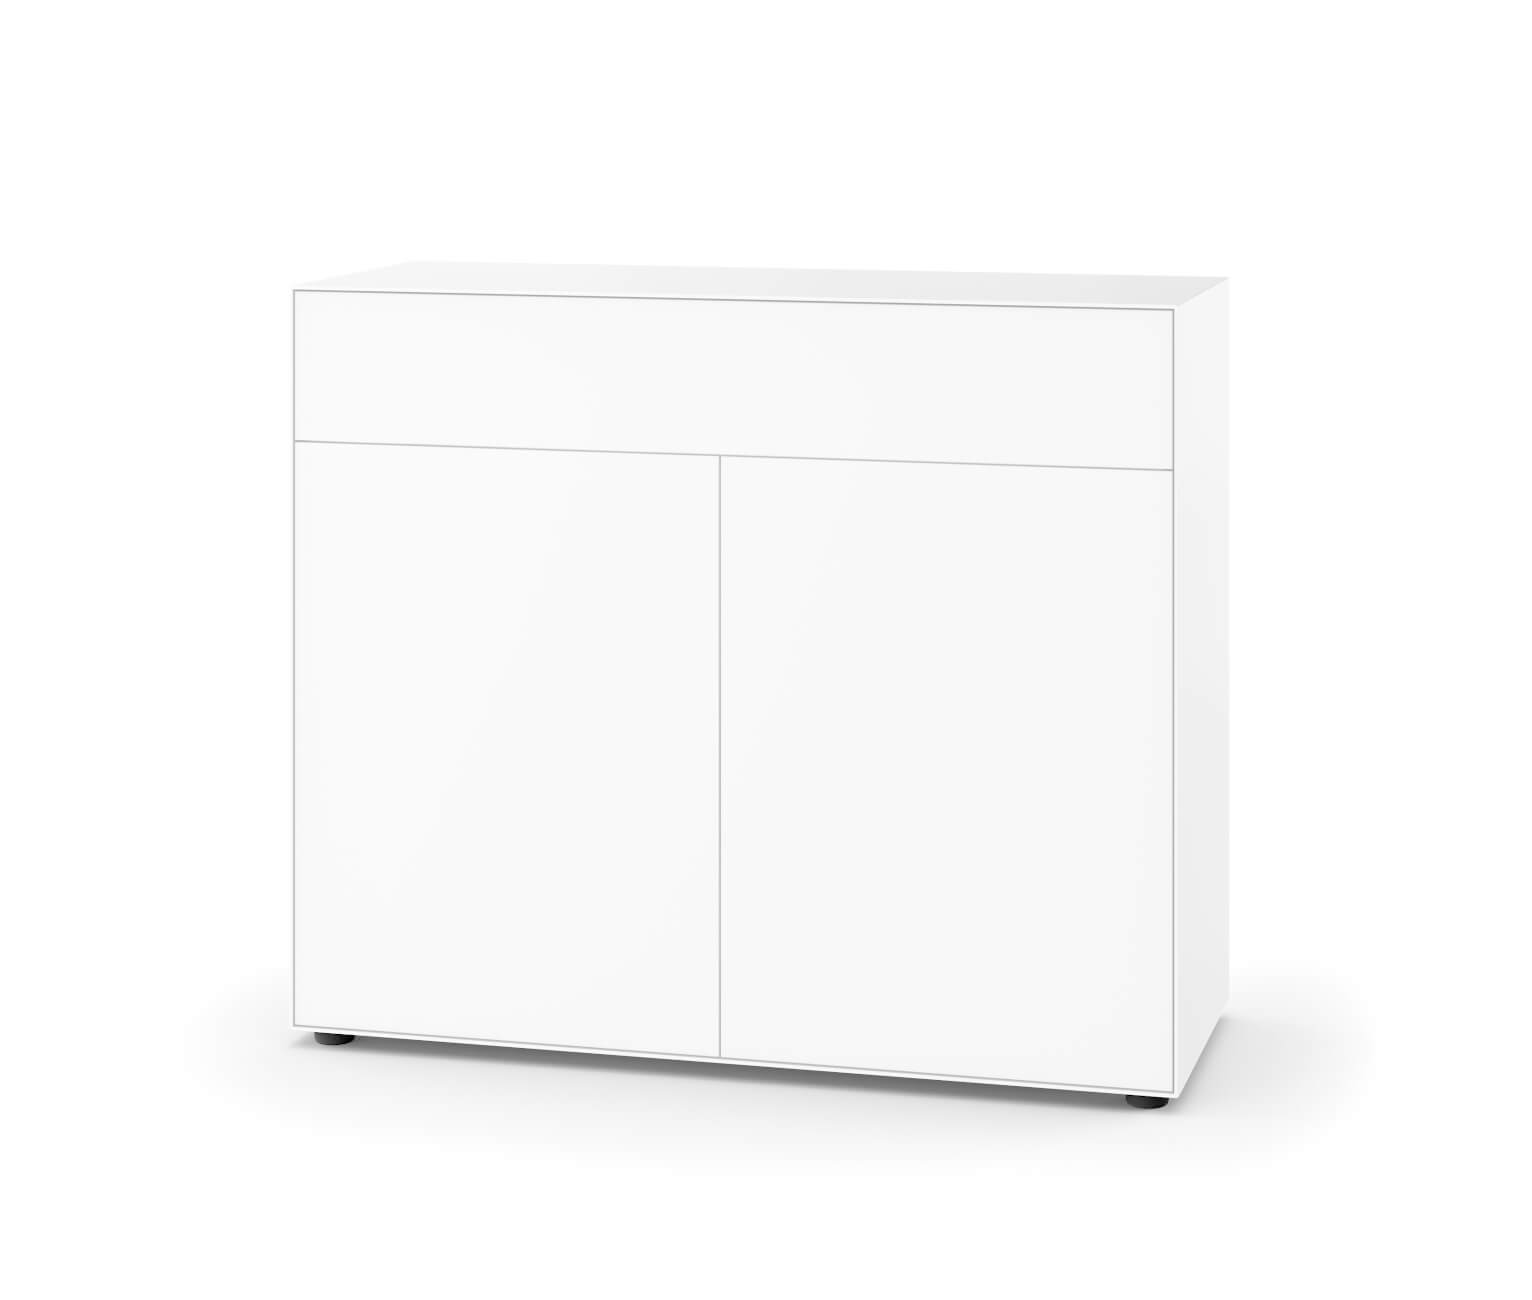 Nex Pur Box Doppeltür + Schubkasten, 100 x 120 cm, weiß